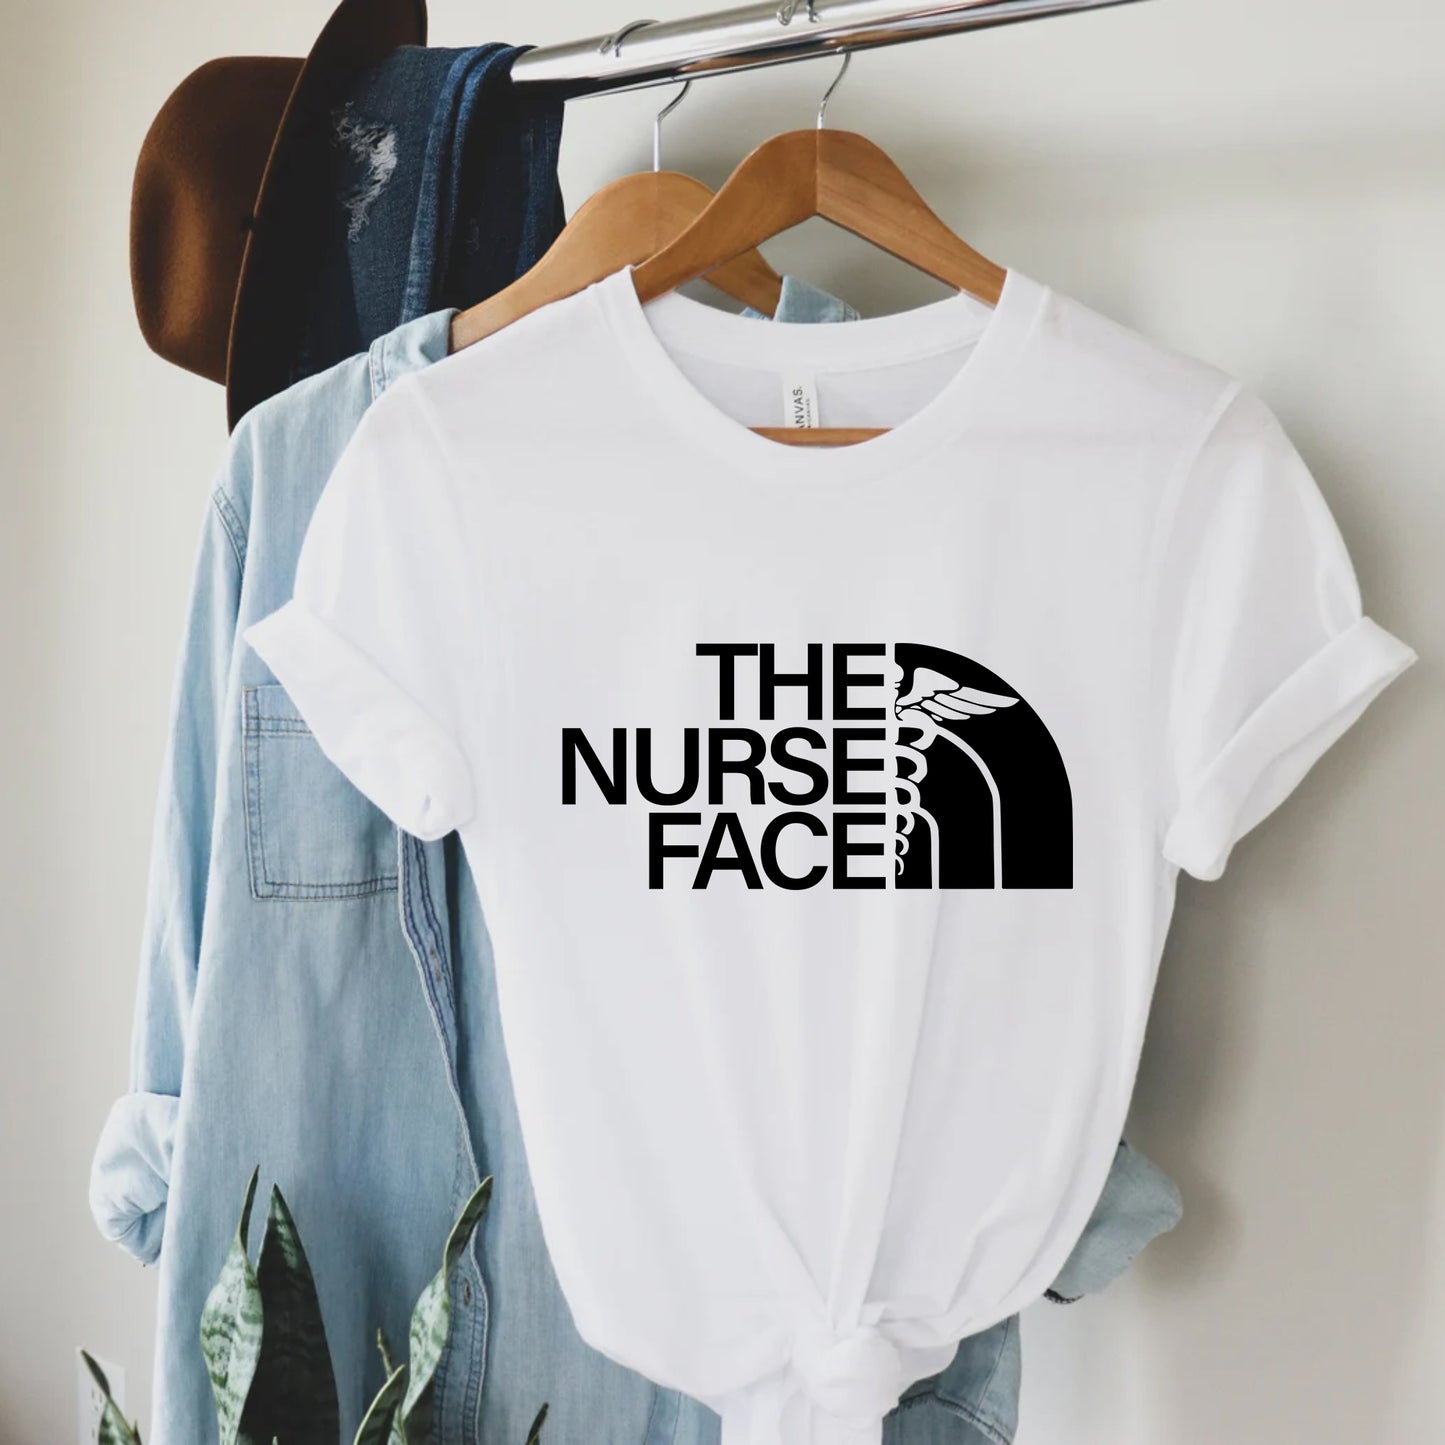 The Nurse Face Shirt - Gift For Nurse